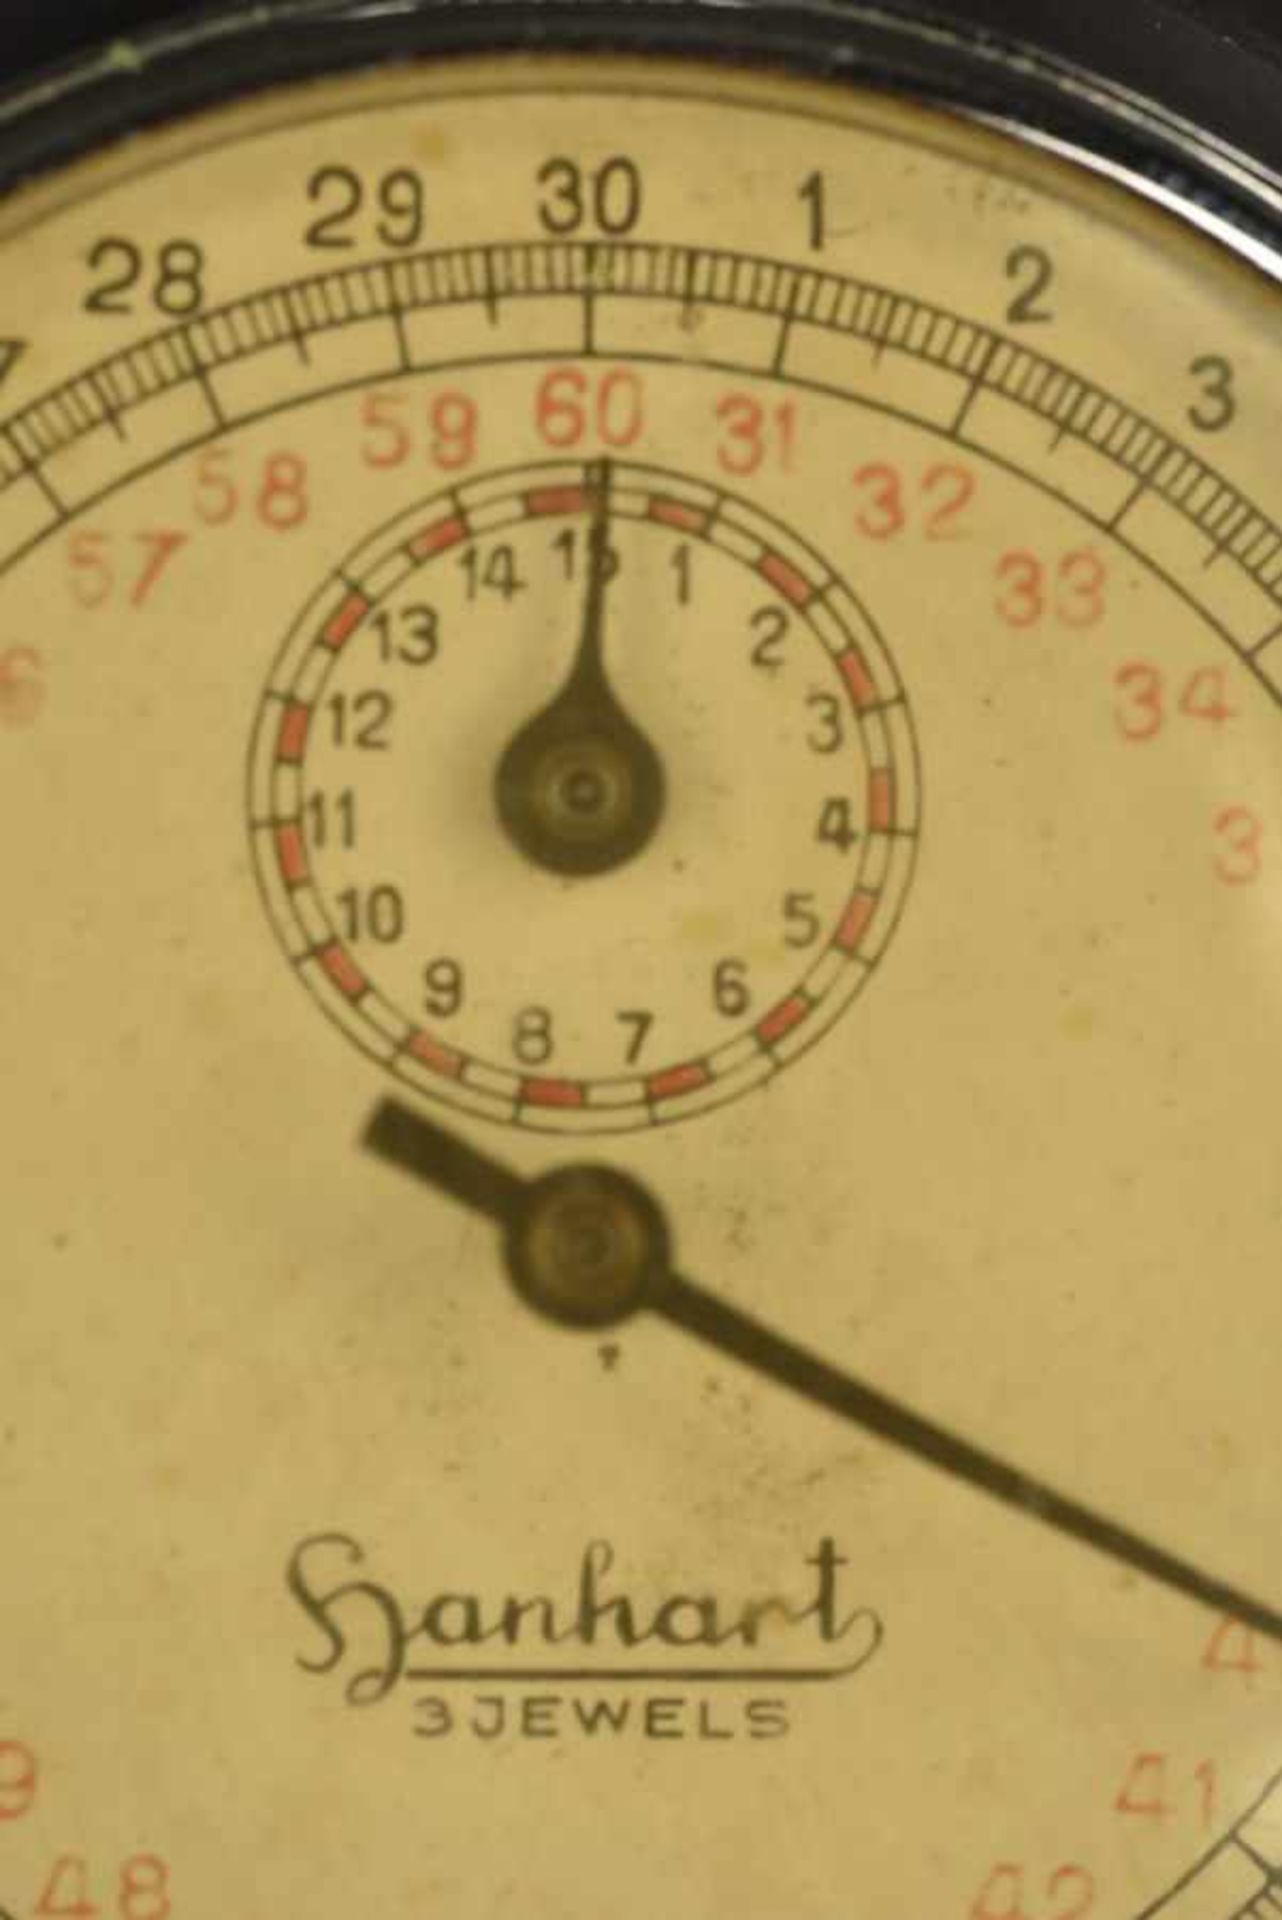 Chronomètre HanhartEn métal, fonctionnel, cadran jauni par le temps. Fabrication Hanhart Jewels. A - Bild 3 aus 4